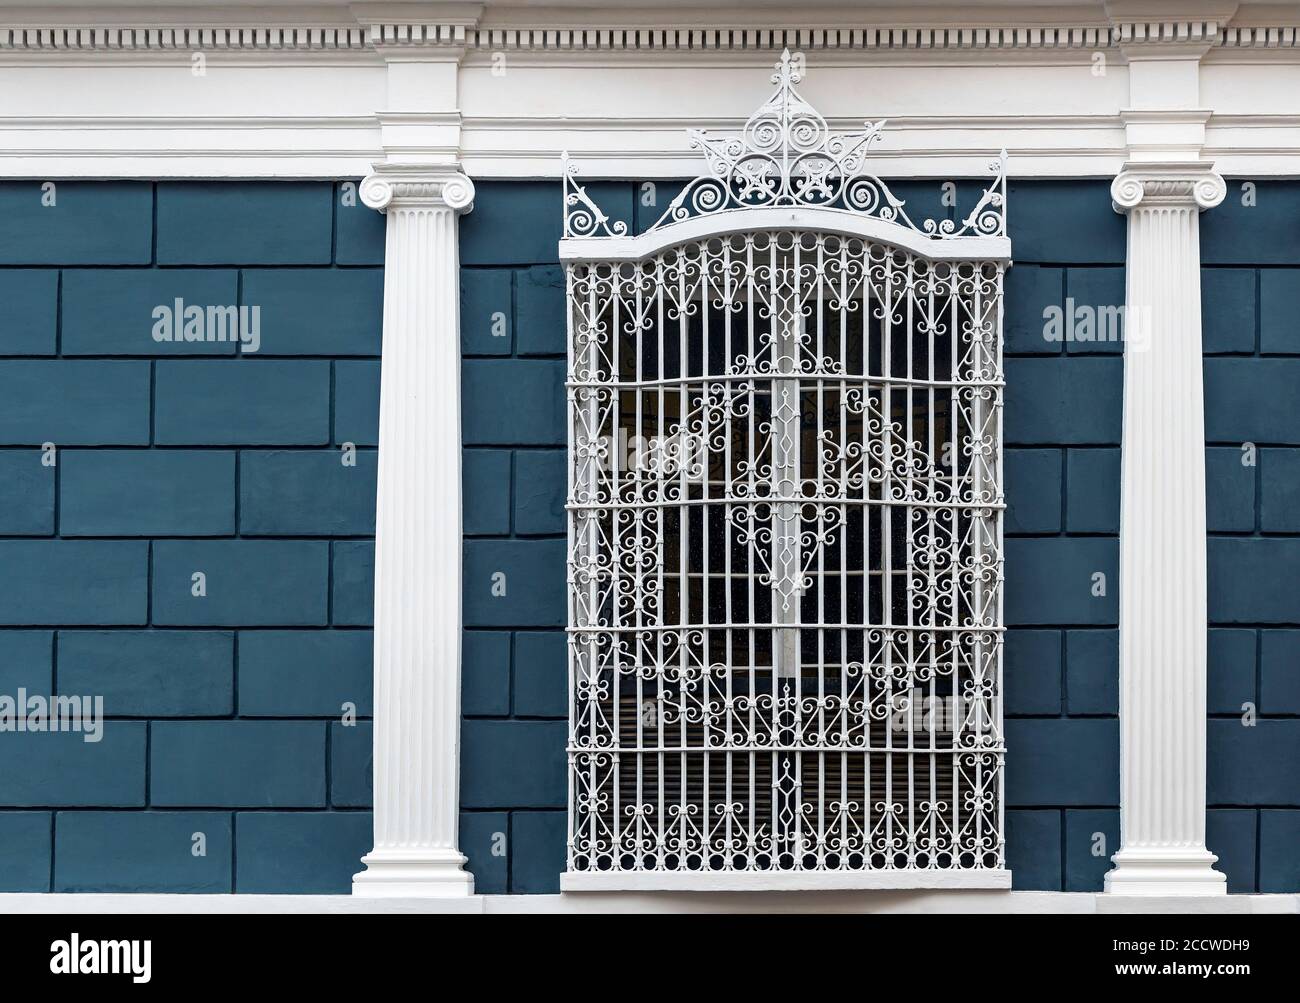 Facciata in stile coloniale con colonne e finestre ornate in ferro battuto, Trujillo, Perù. Foto Stock